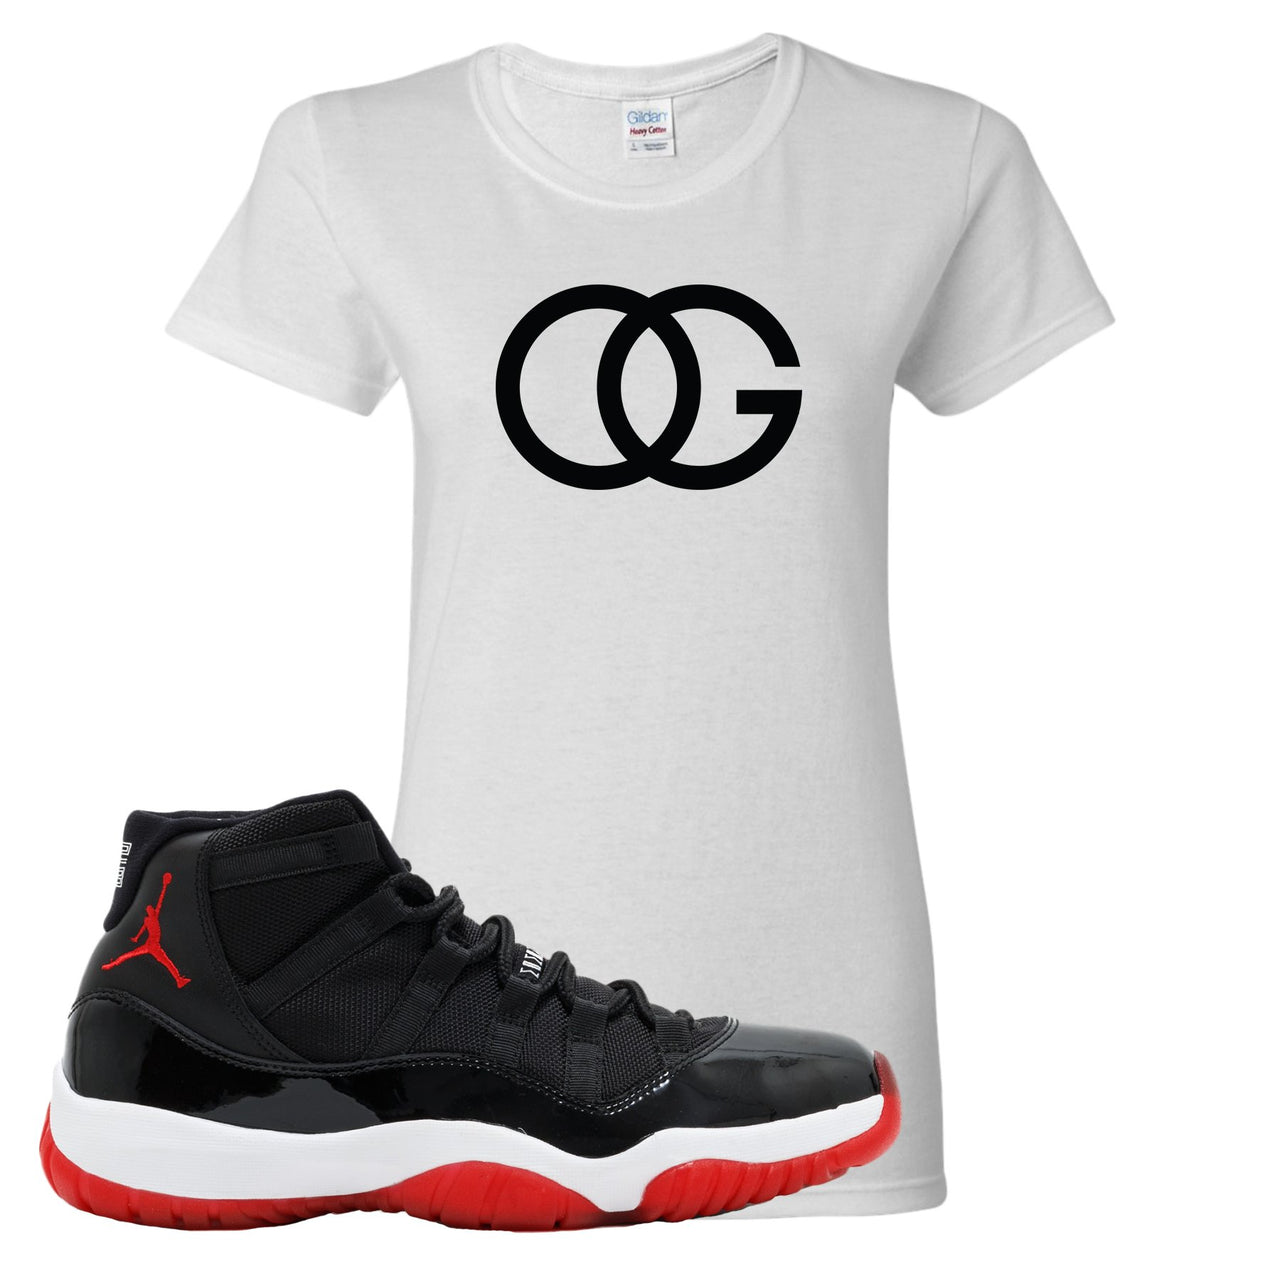 Jordan 11 Bred OG White Sneaker Hook Up Women's T-Shirt